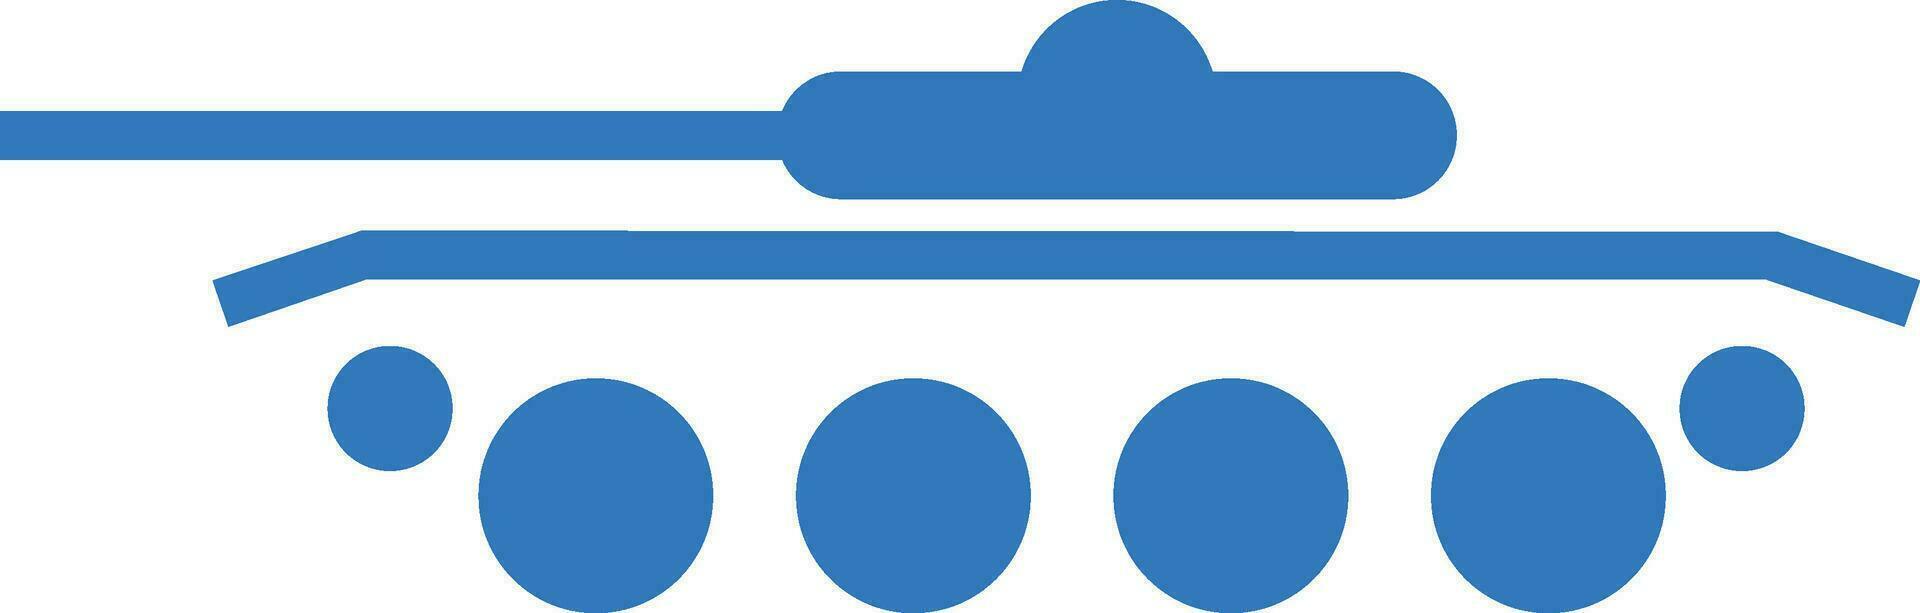 blu artiglieria pistola icona vettore. vettore